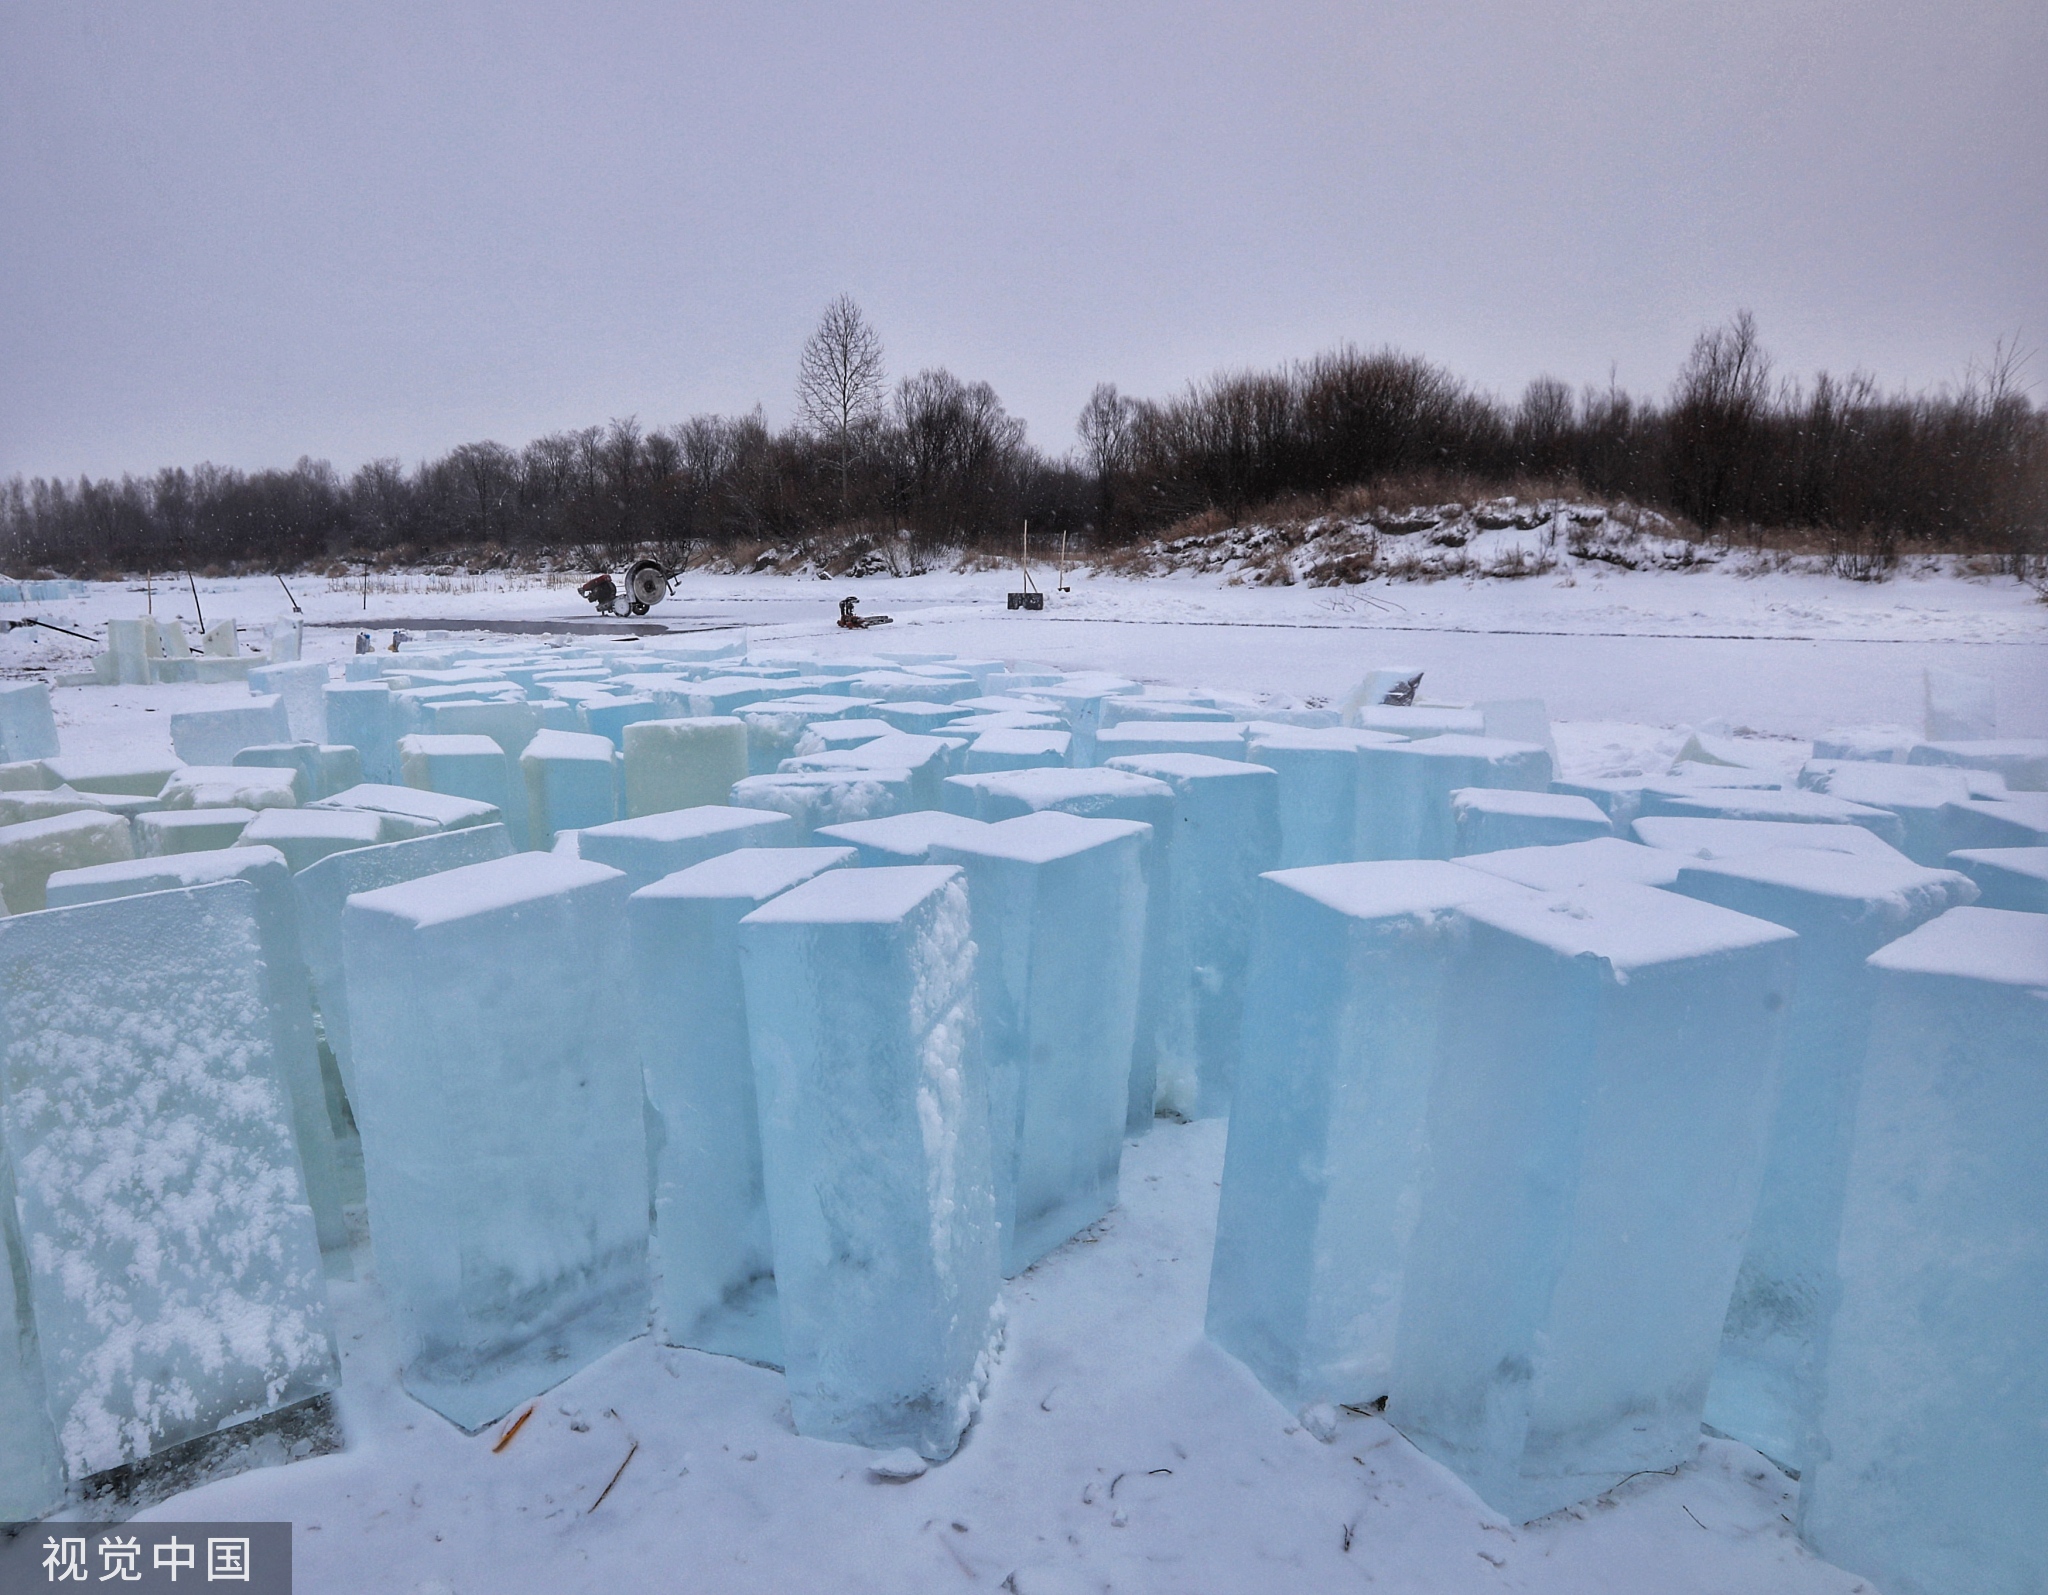 建设用冰,码放在大林河边,不同于松花江江冰,这里的冰呈现明显的蓝色